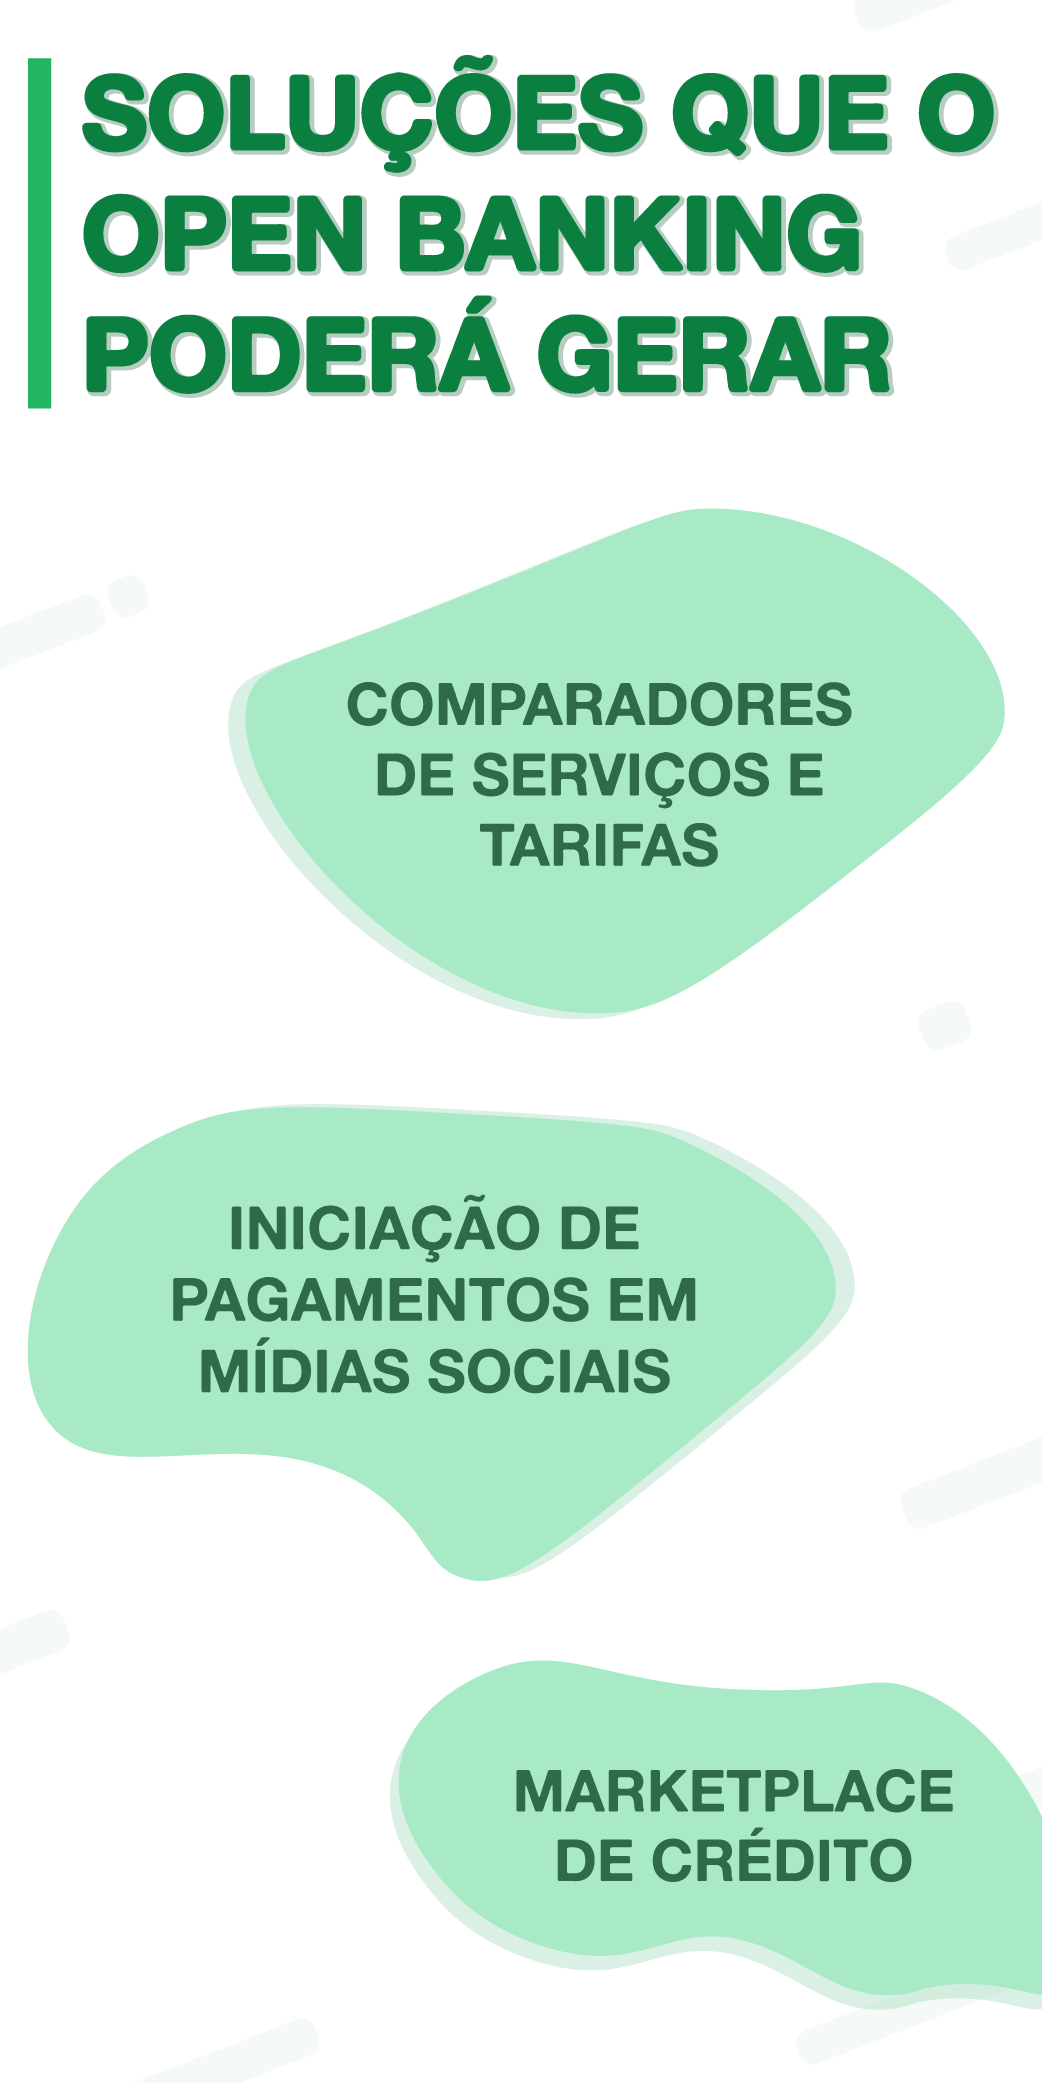 Soluções_e_novidades_geradas_pelo_open_banking